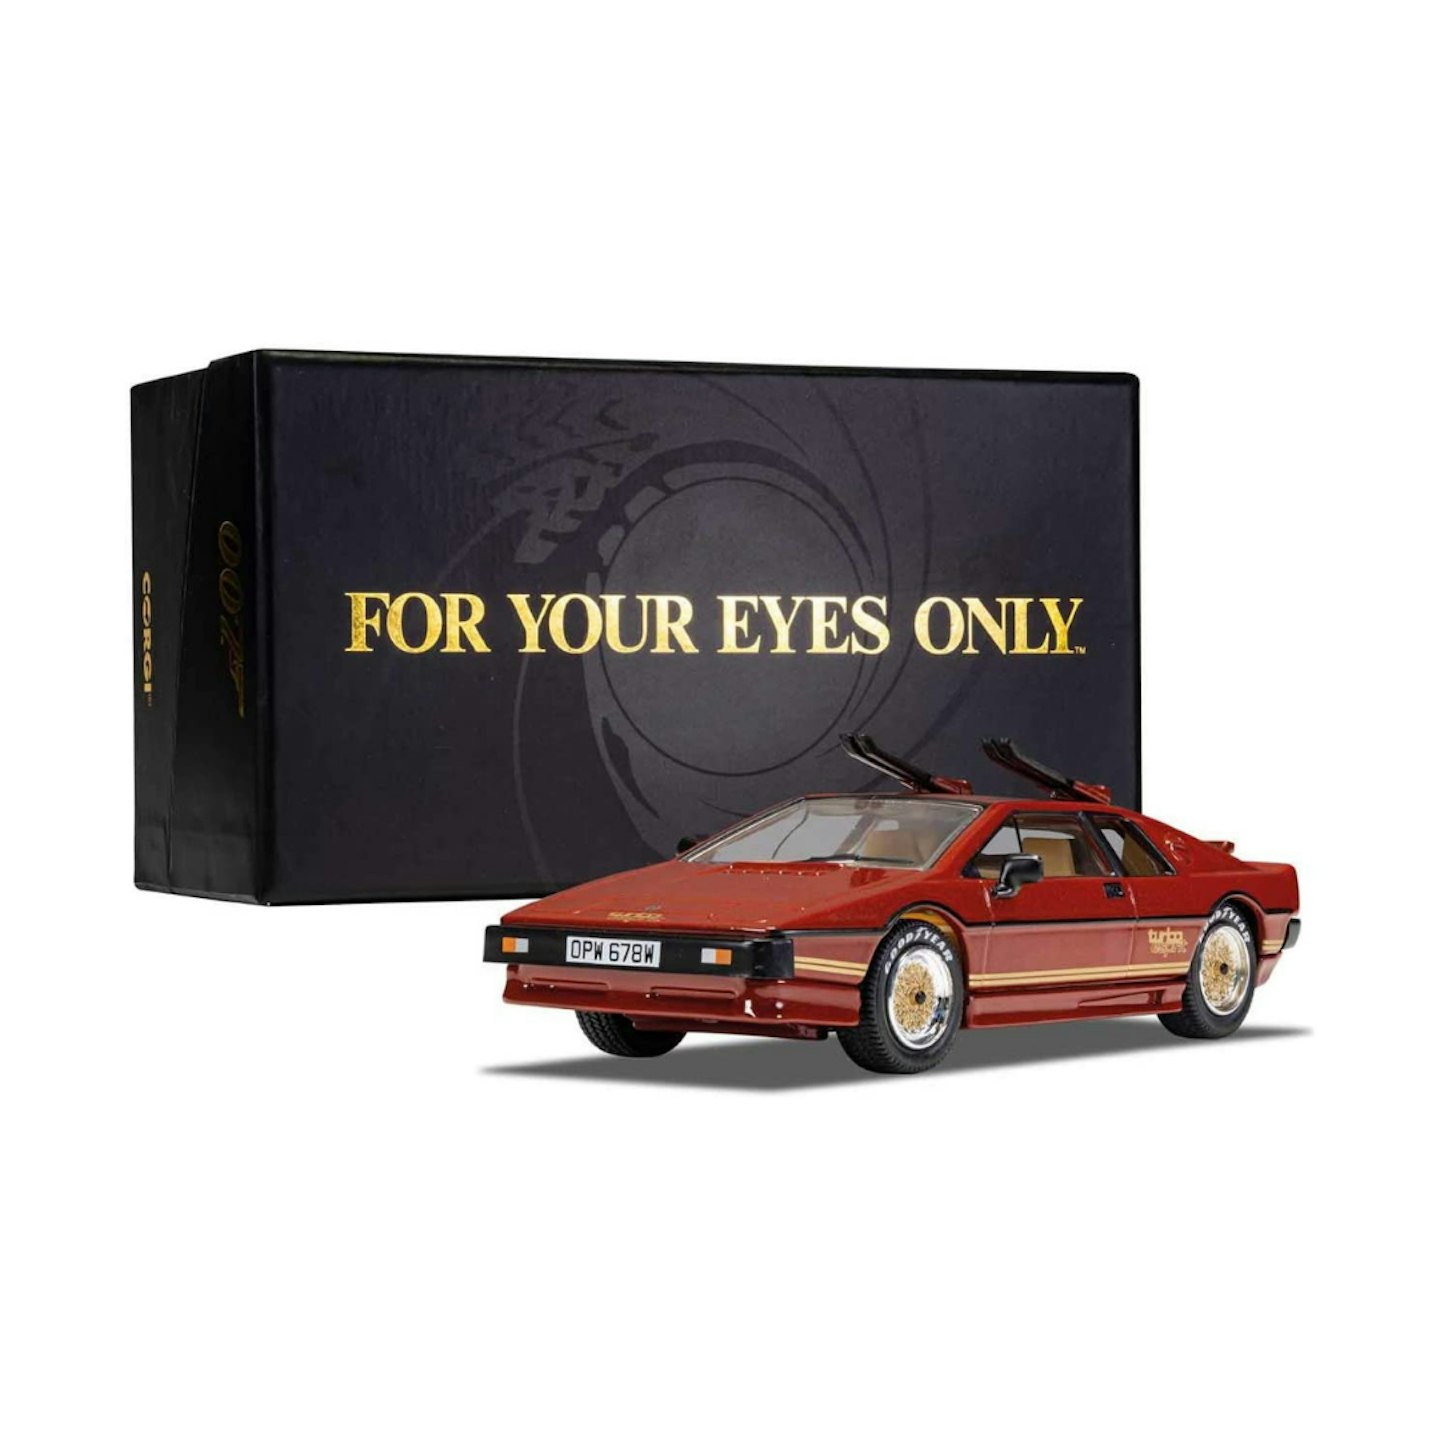 Corgi CC04705 Corgi James Bond - Lotus Turbo - For Your Eyes Only